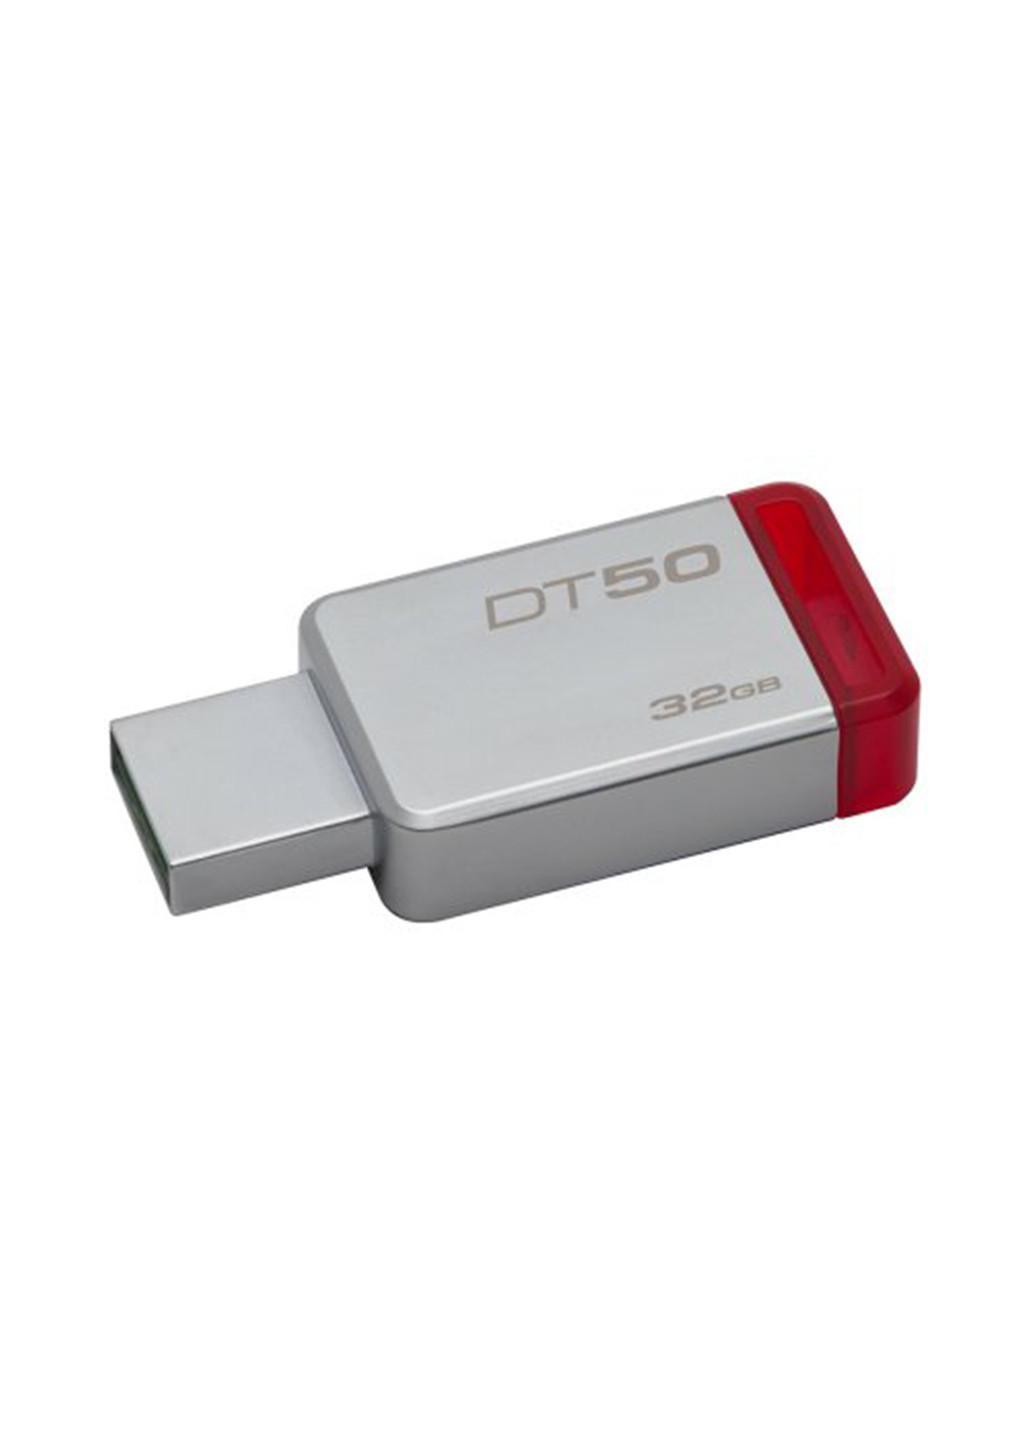 Флеш память USB DataTraveler 50 32GB Red (DT50/32GB) Kingston флеш память usb kingston datatraveler 50 32gb red (dt50/32gb) (139256245)